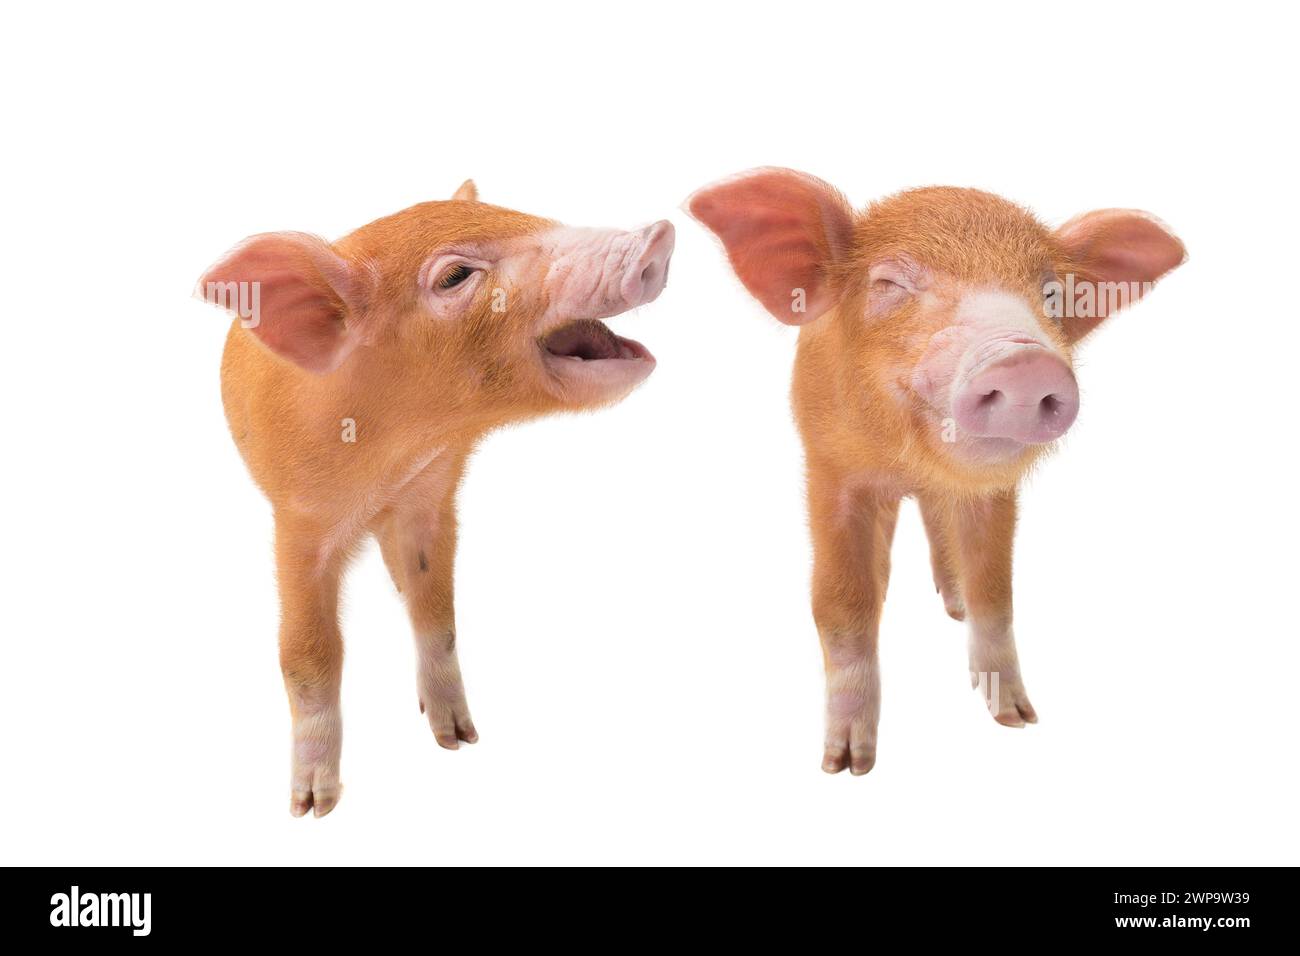 Deux cochons jaunes avec les yeux fermés isolés sur un fond blanc Banque D'Images